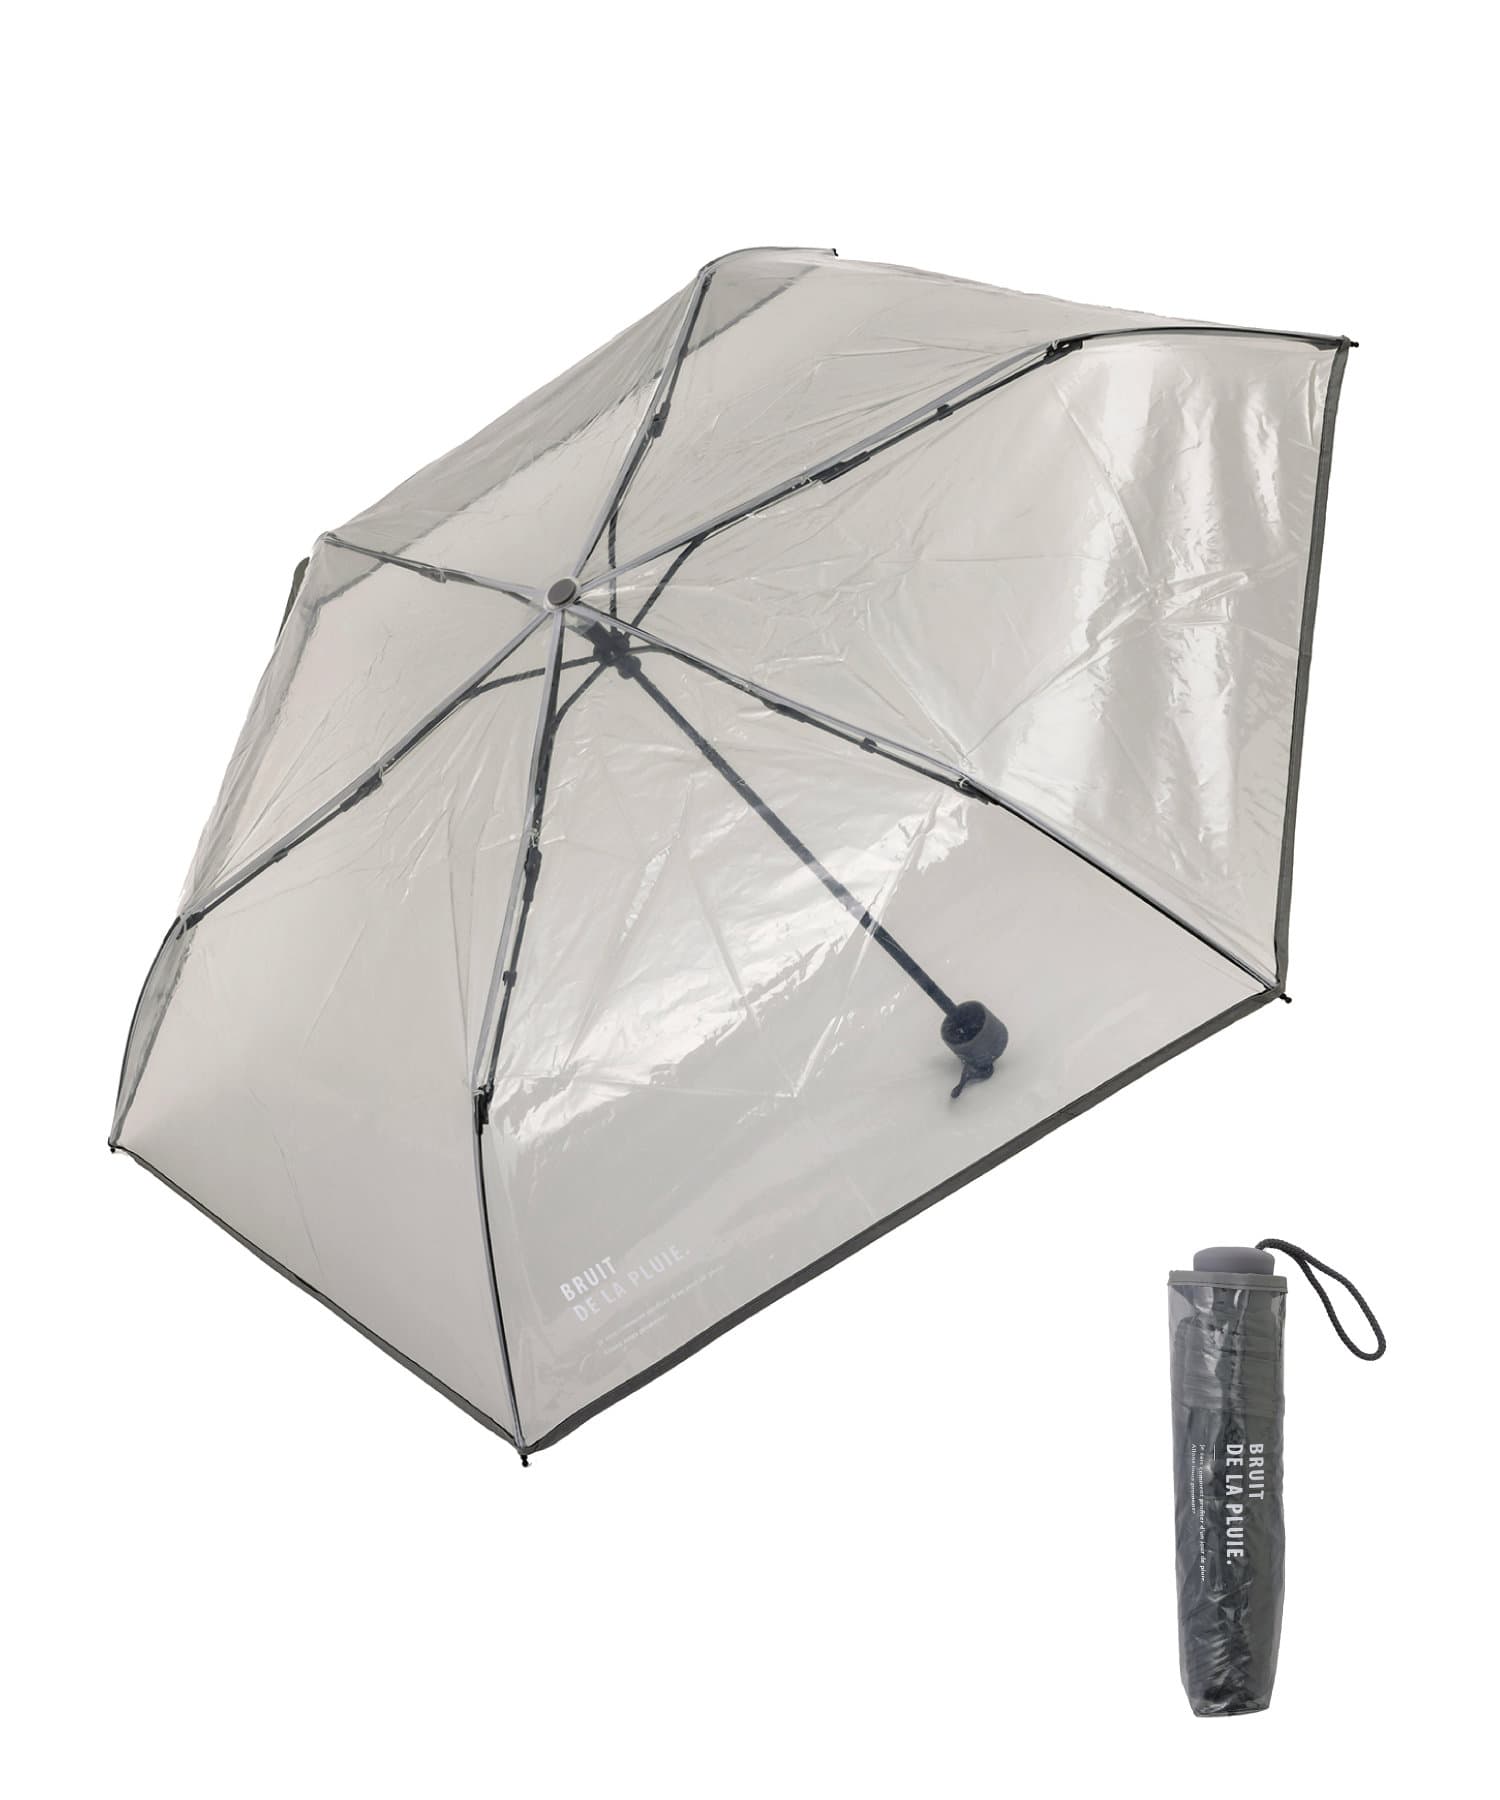 3COINS(スリーコインズ) ロゴビニール折りたたみ傘